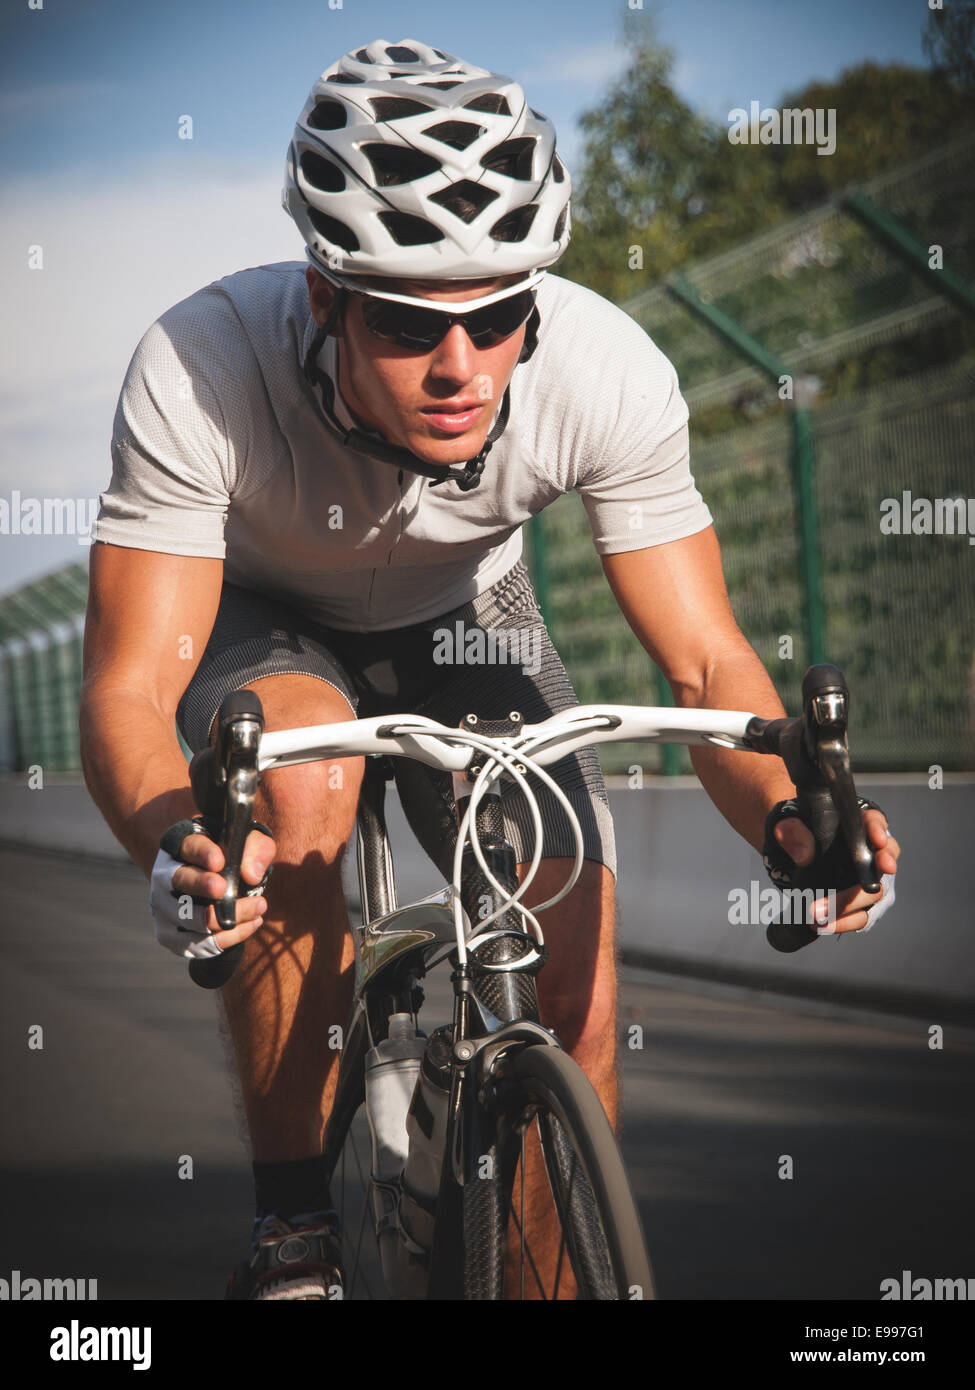 Ciclista ritratto in azione sulla strada in una giornata di sole. Foto Stock